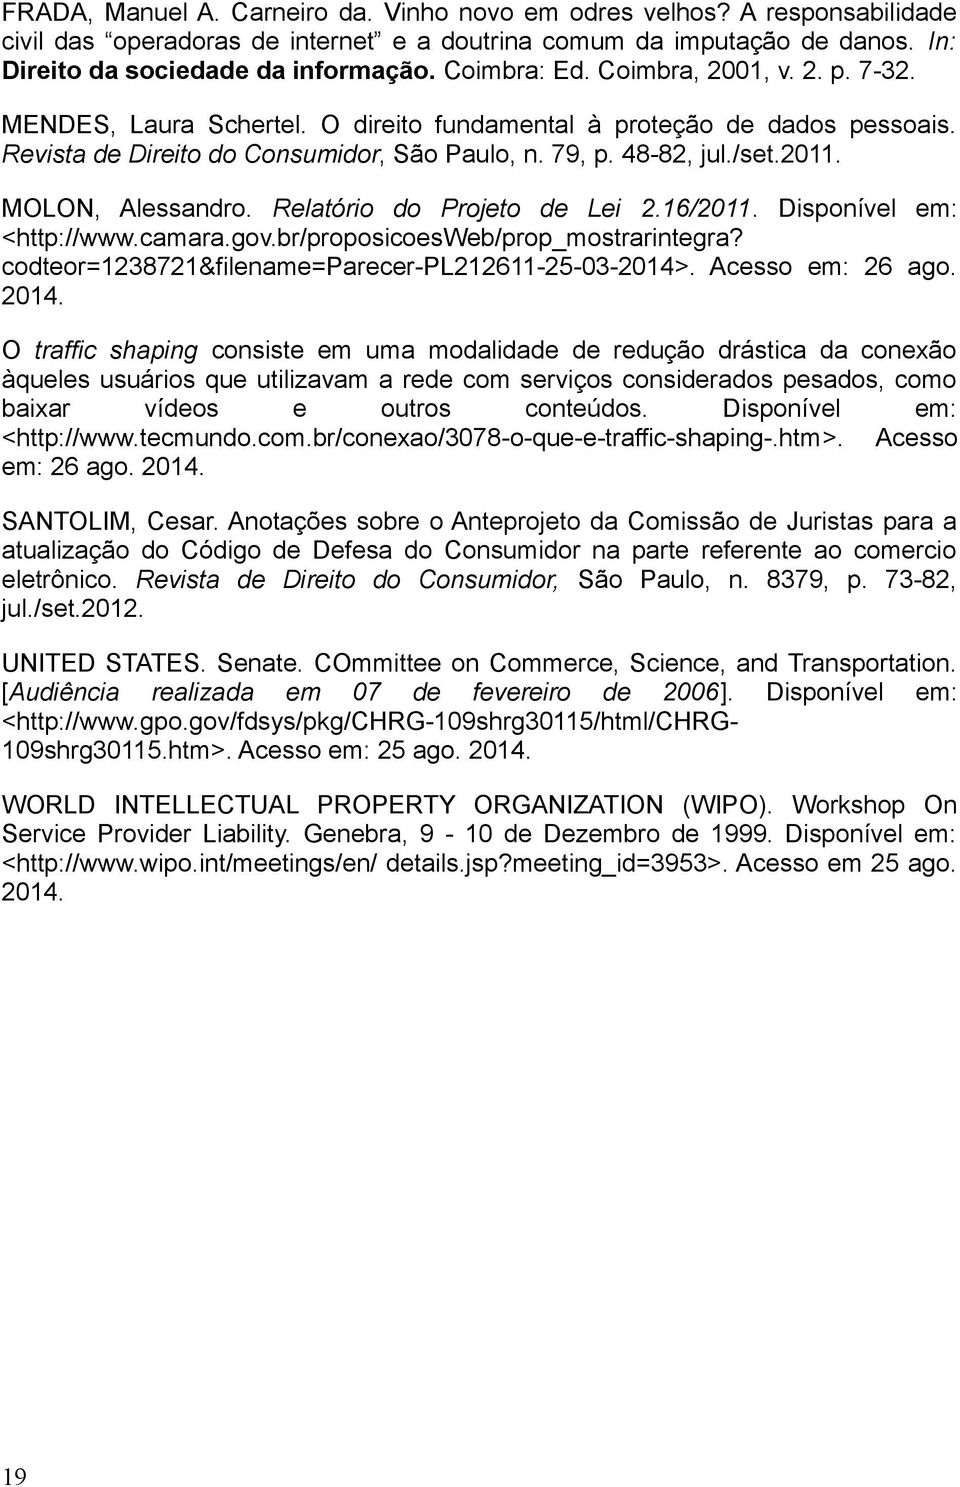 MOLON, Alessandro. Relatório do Projeto de Lei 2.16/2011. Disponível em: <http://www.camara.gov.br/proposicoesweb/prop_mostrarintegra? codteor=1238721&filename=parecer-pl212611-25-03-2014>.